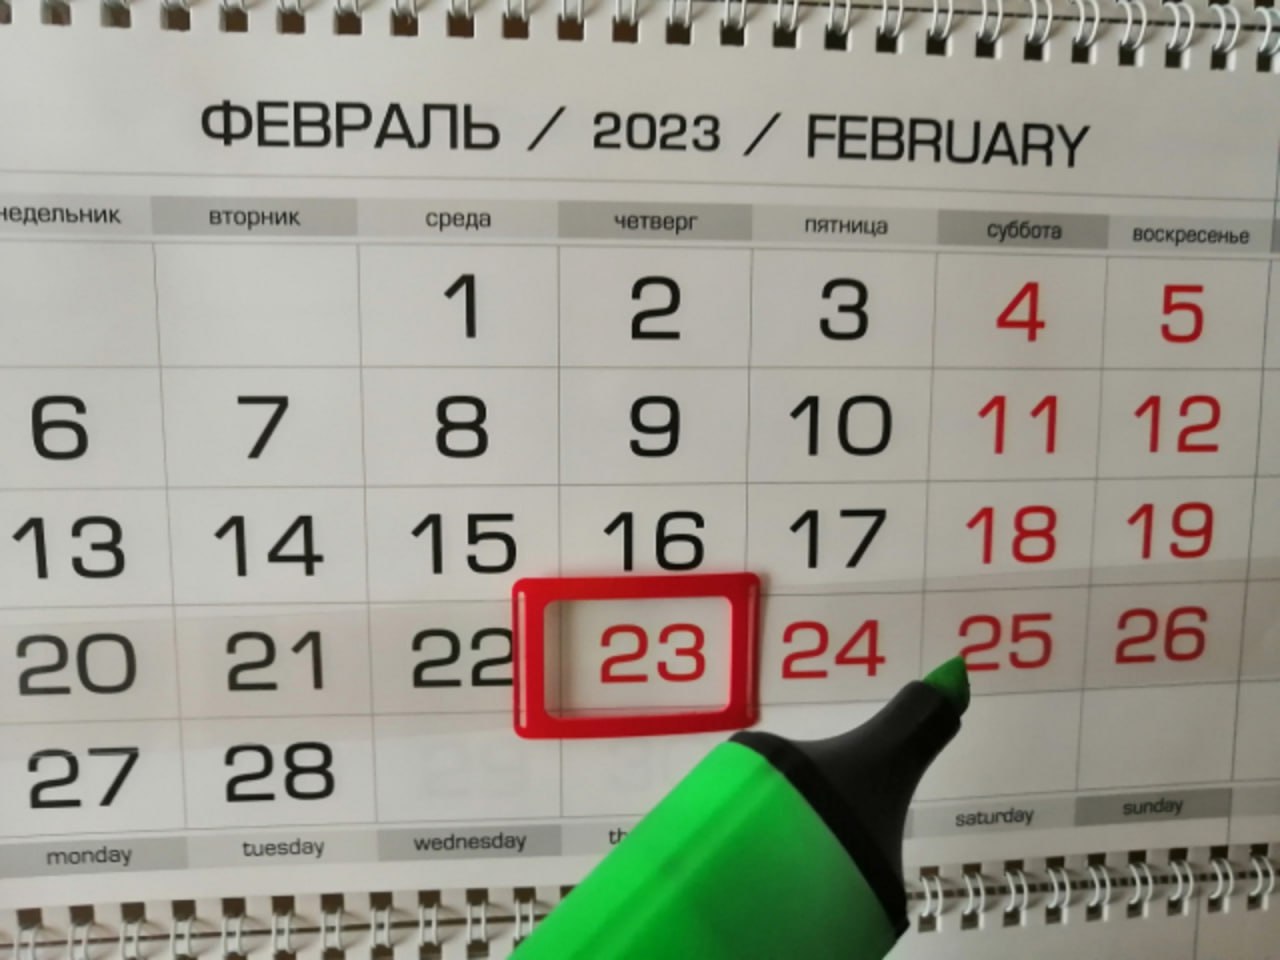 Праздники 23 февраля как работаем. DS[jlyst d atdhfkz 2023. Выходные дни в феврале. Выходные дни в прошлом году на 23 февраля. Выходные 2023.